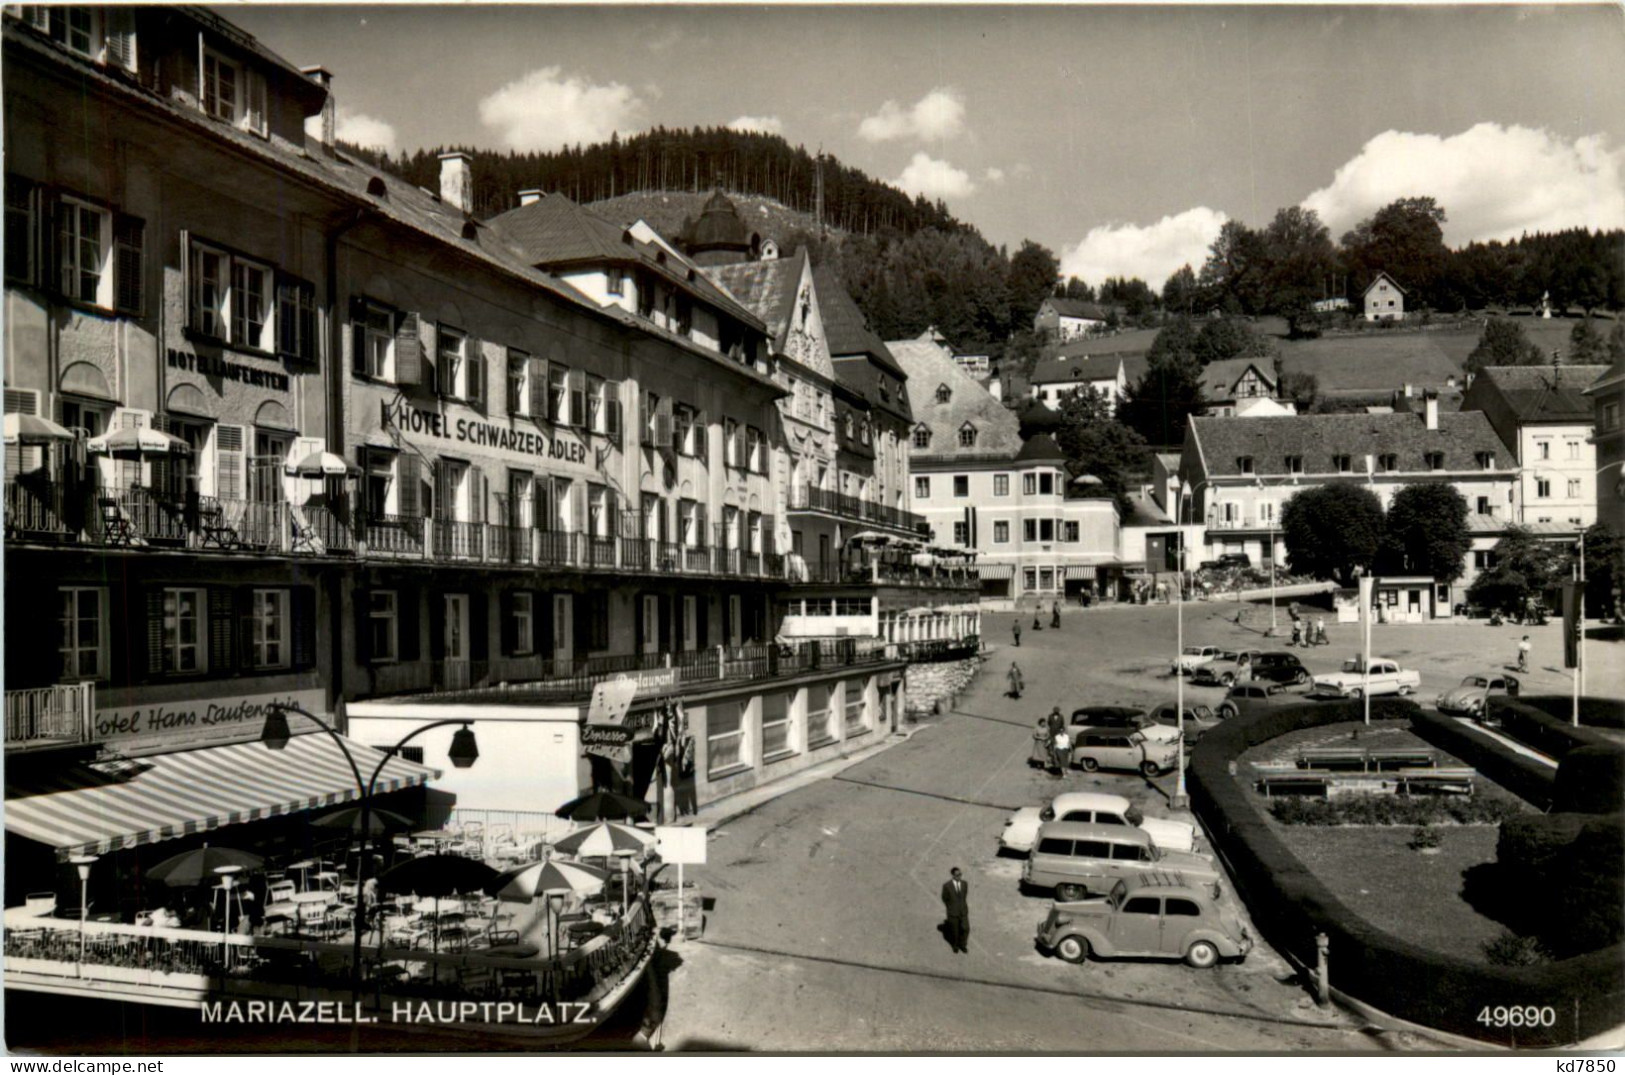 Mariazell, Hauptplatz - Mariazell